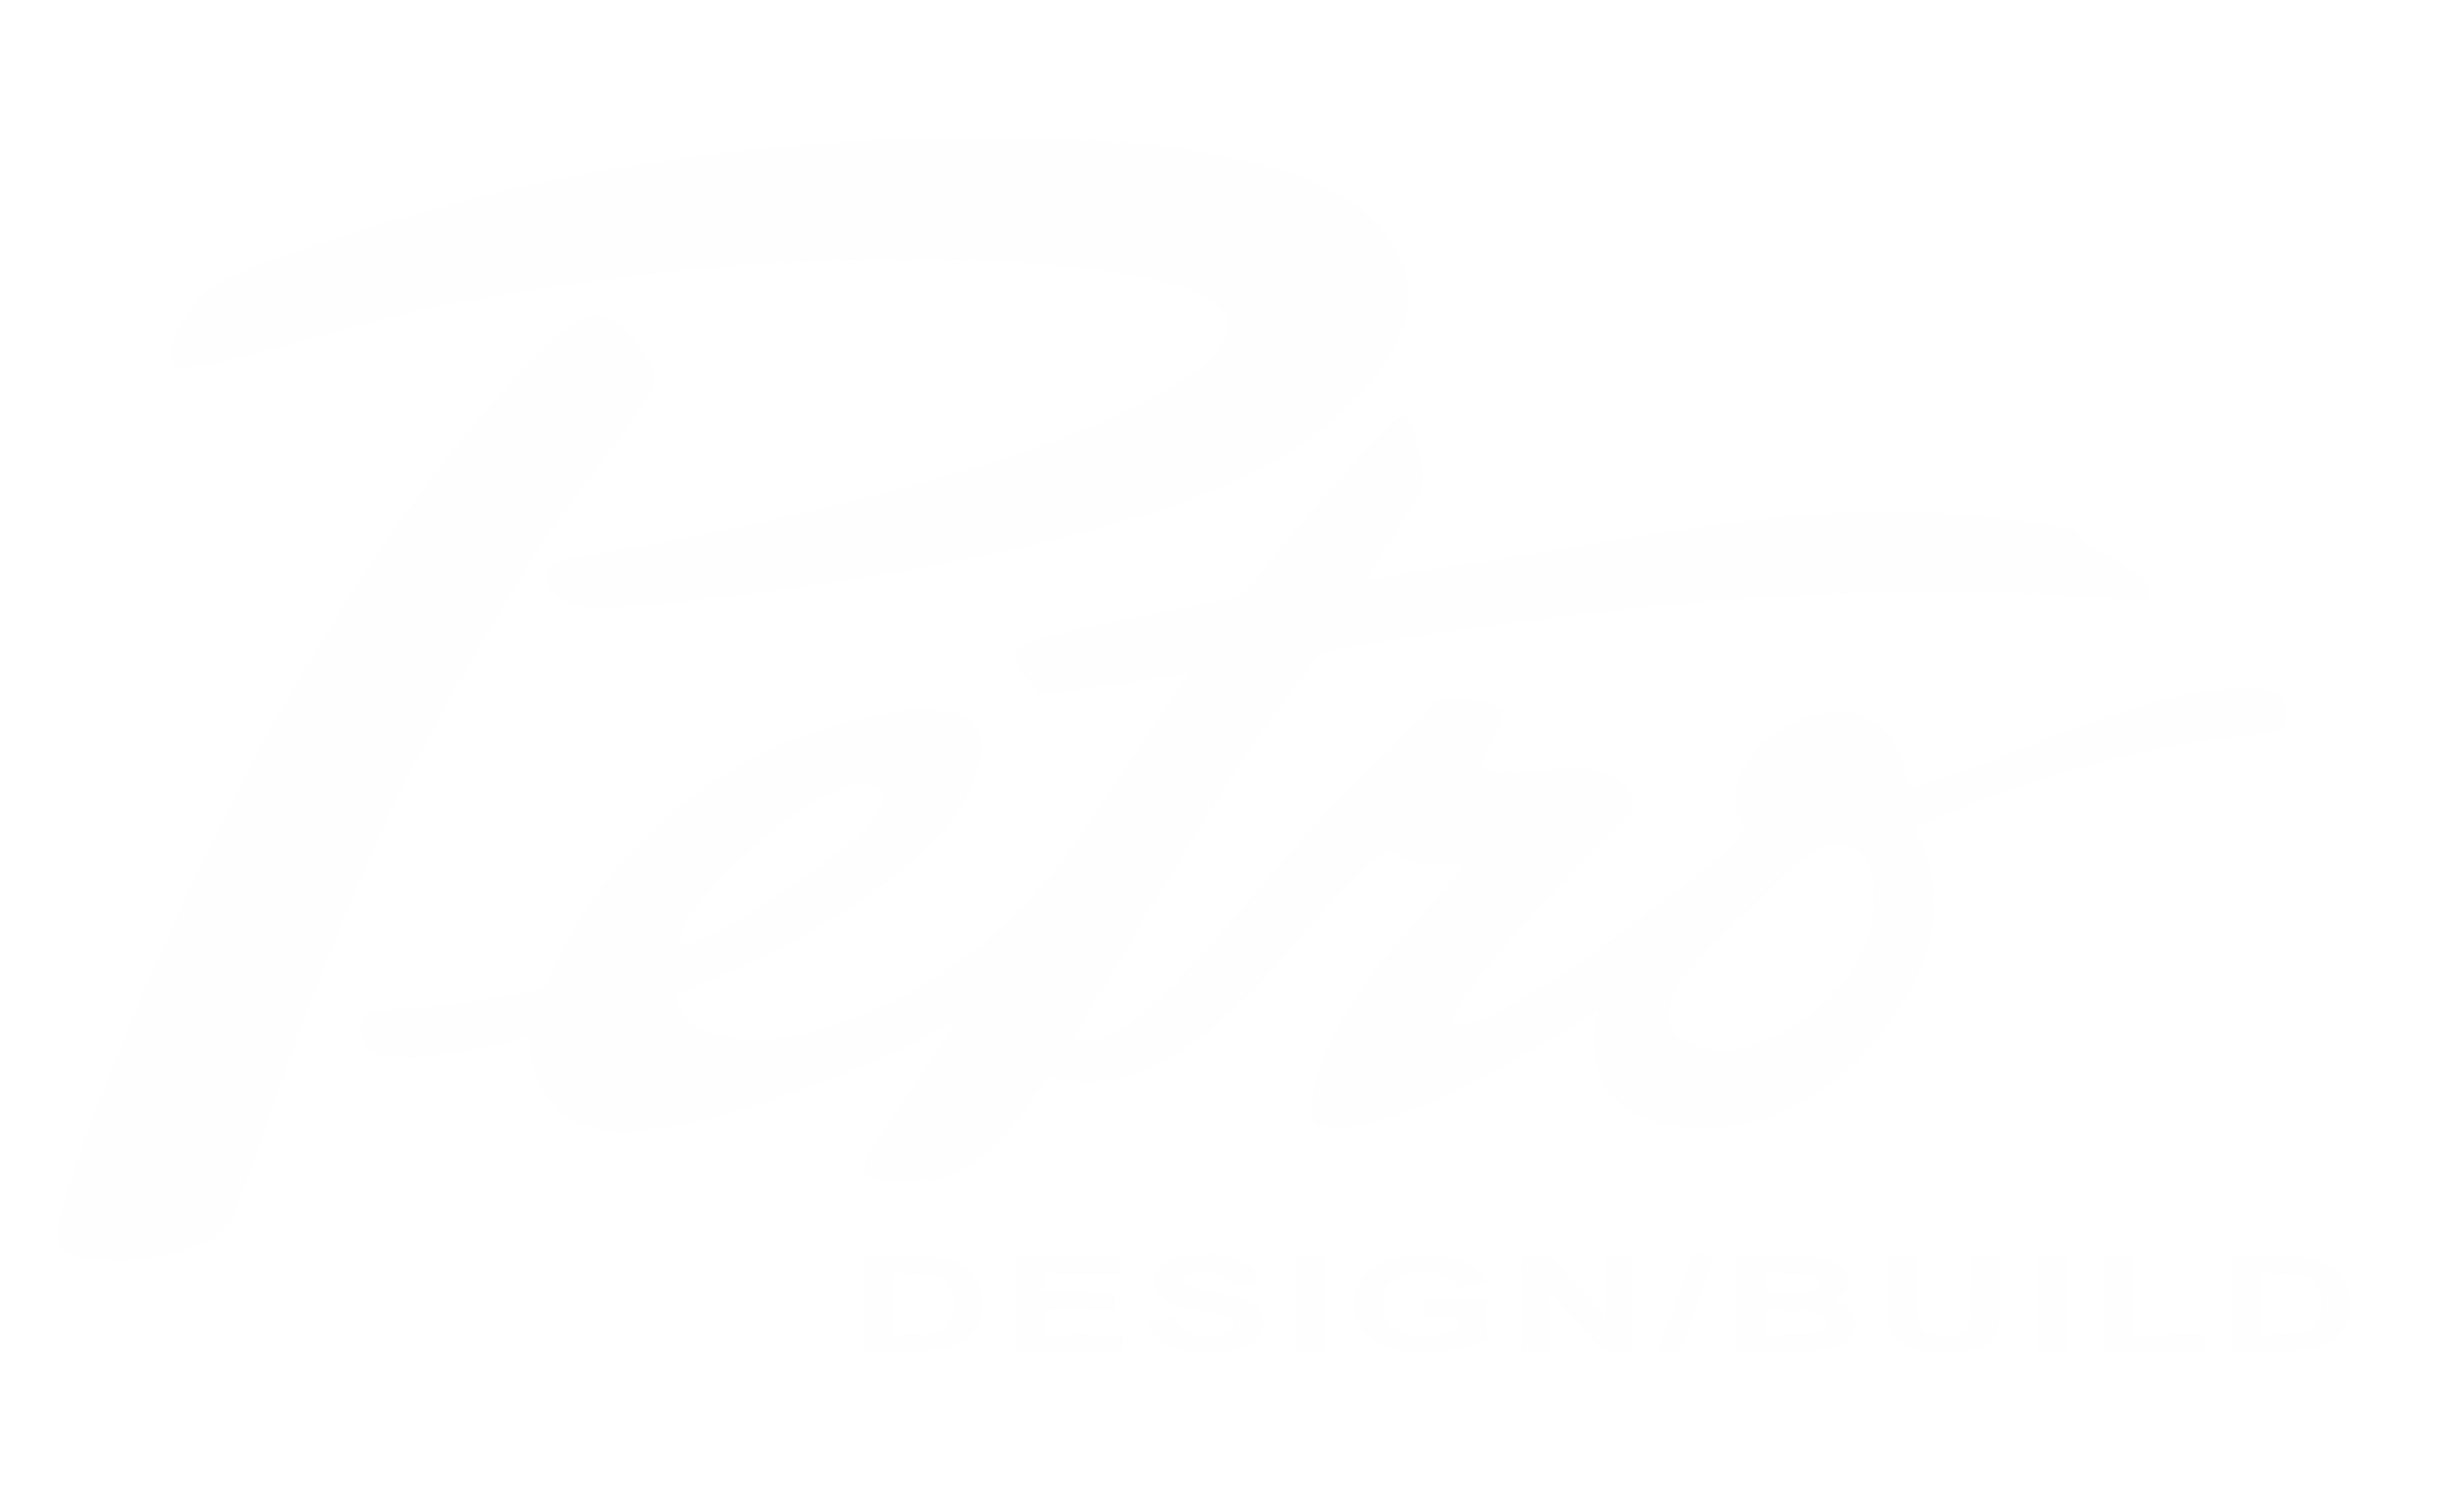 Petro Design Build Group